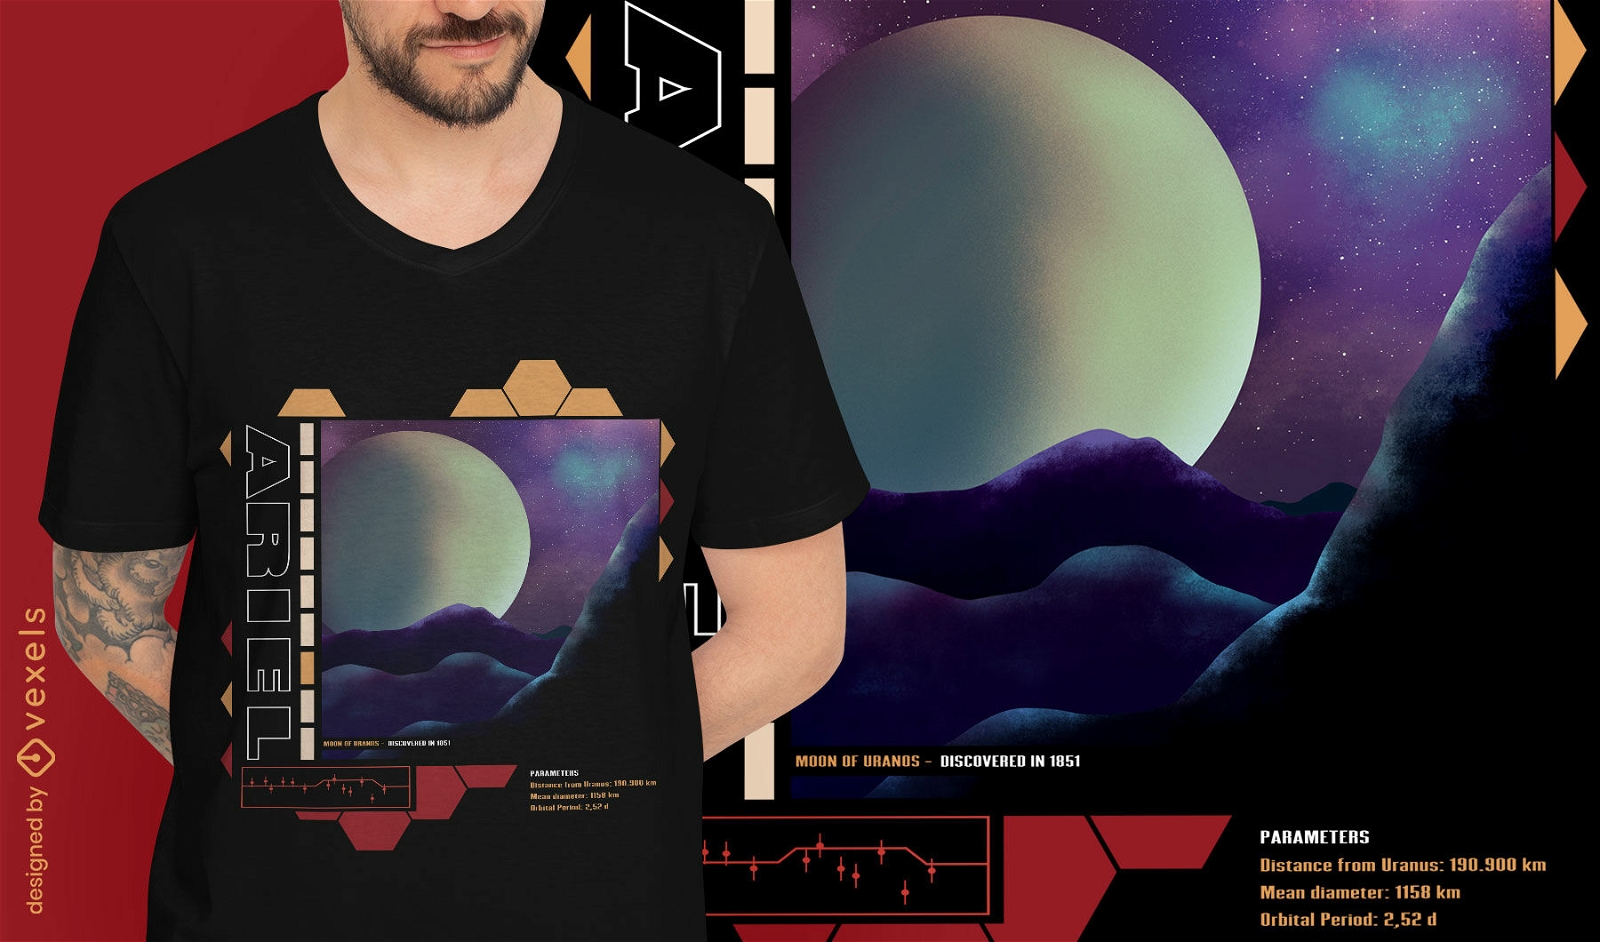 Uranus-Mond-Beschreibung psd T-Shirt-Design